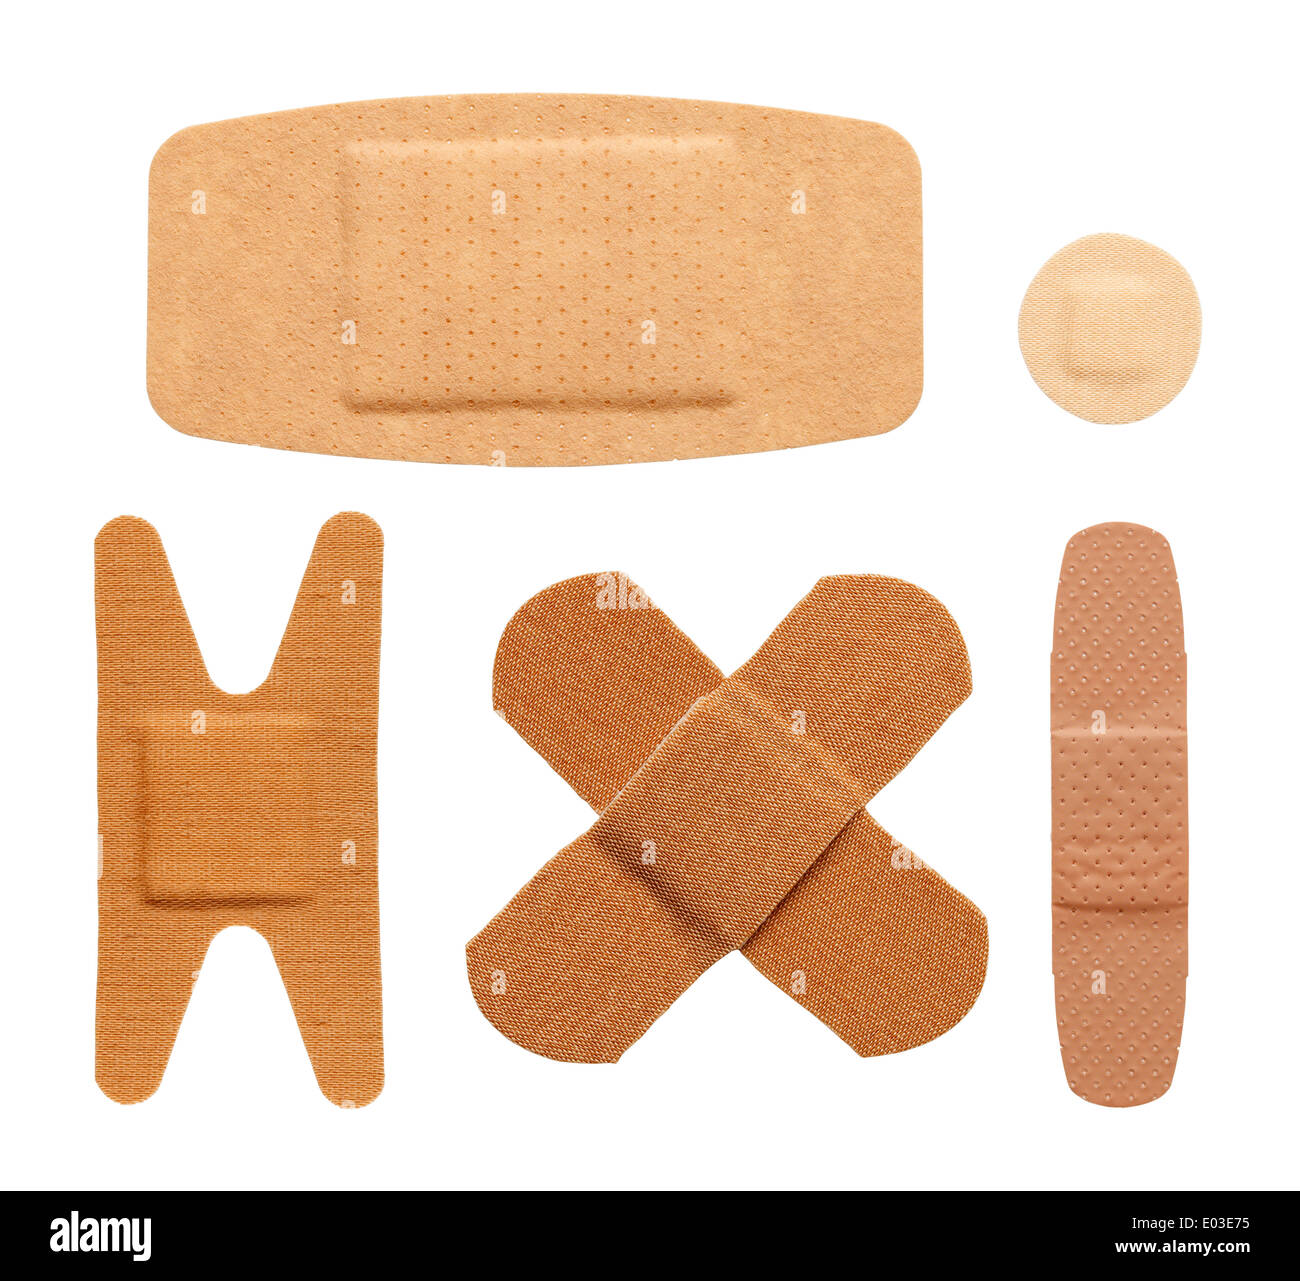 Diverses formes de bandage tailles et couleurs isolé sur un fond blanc. Banque D'Images